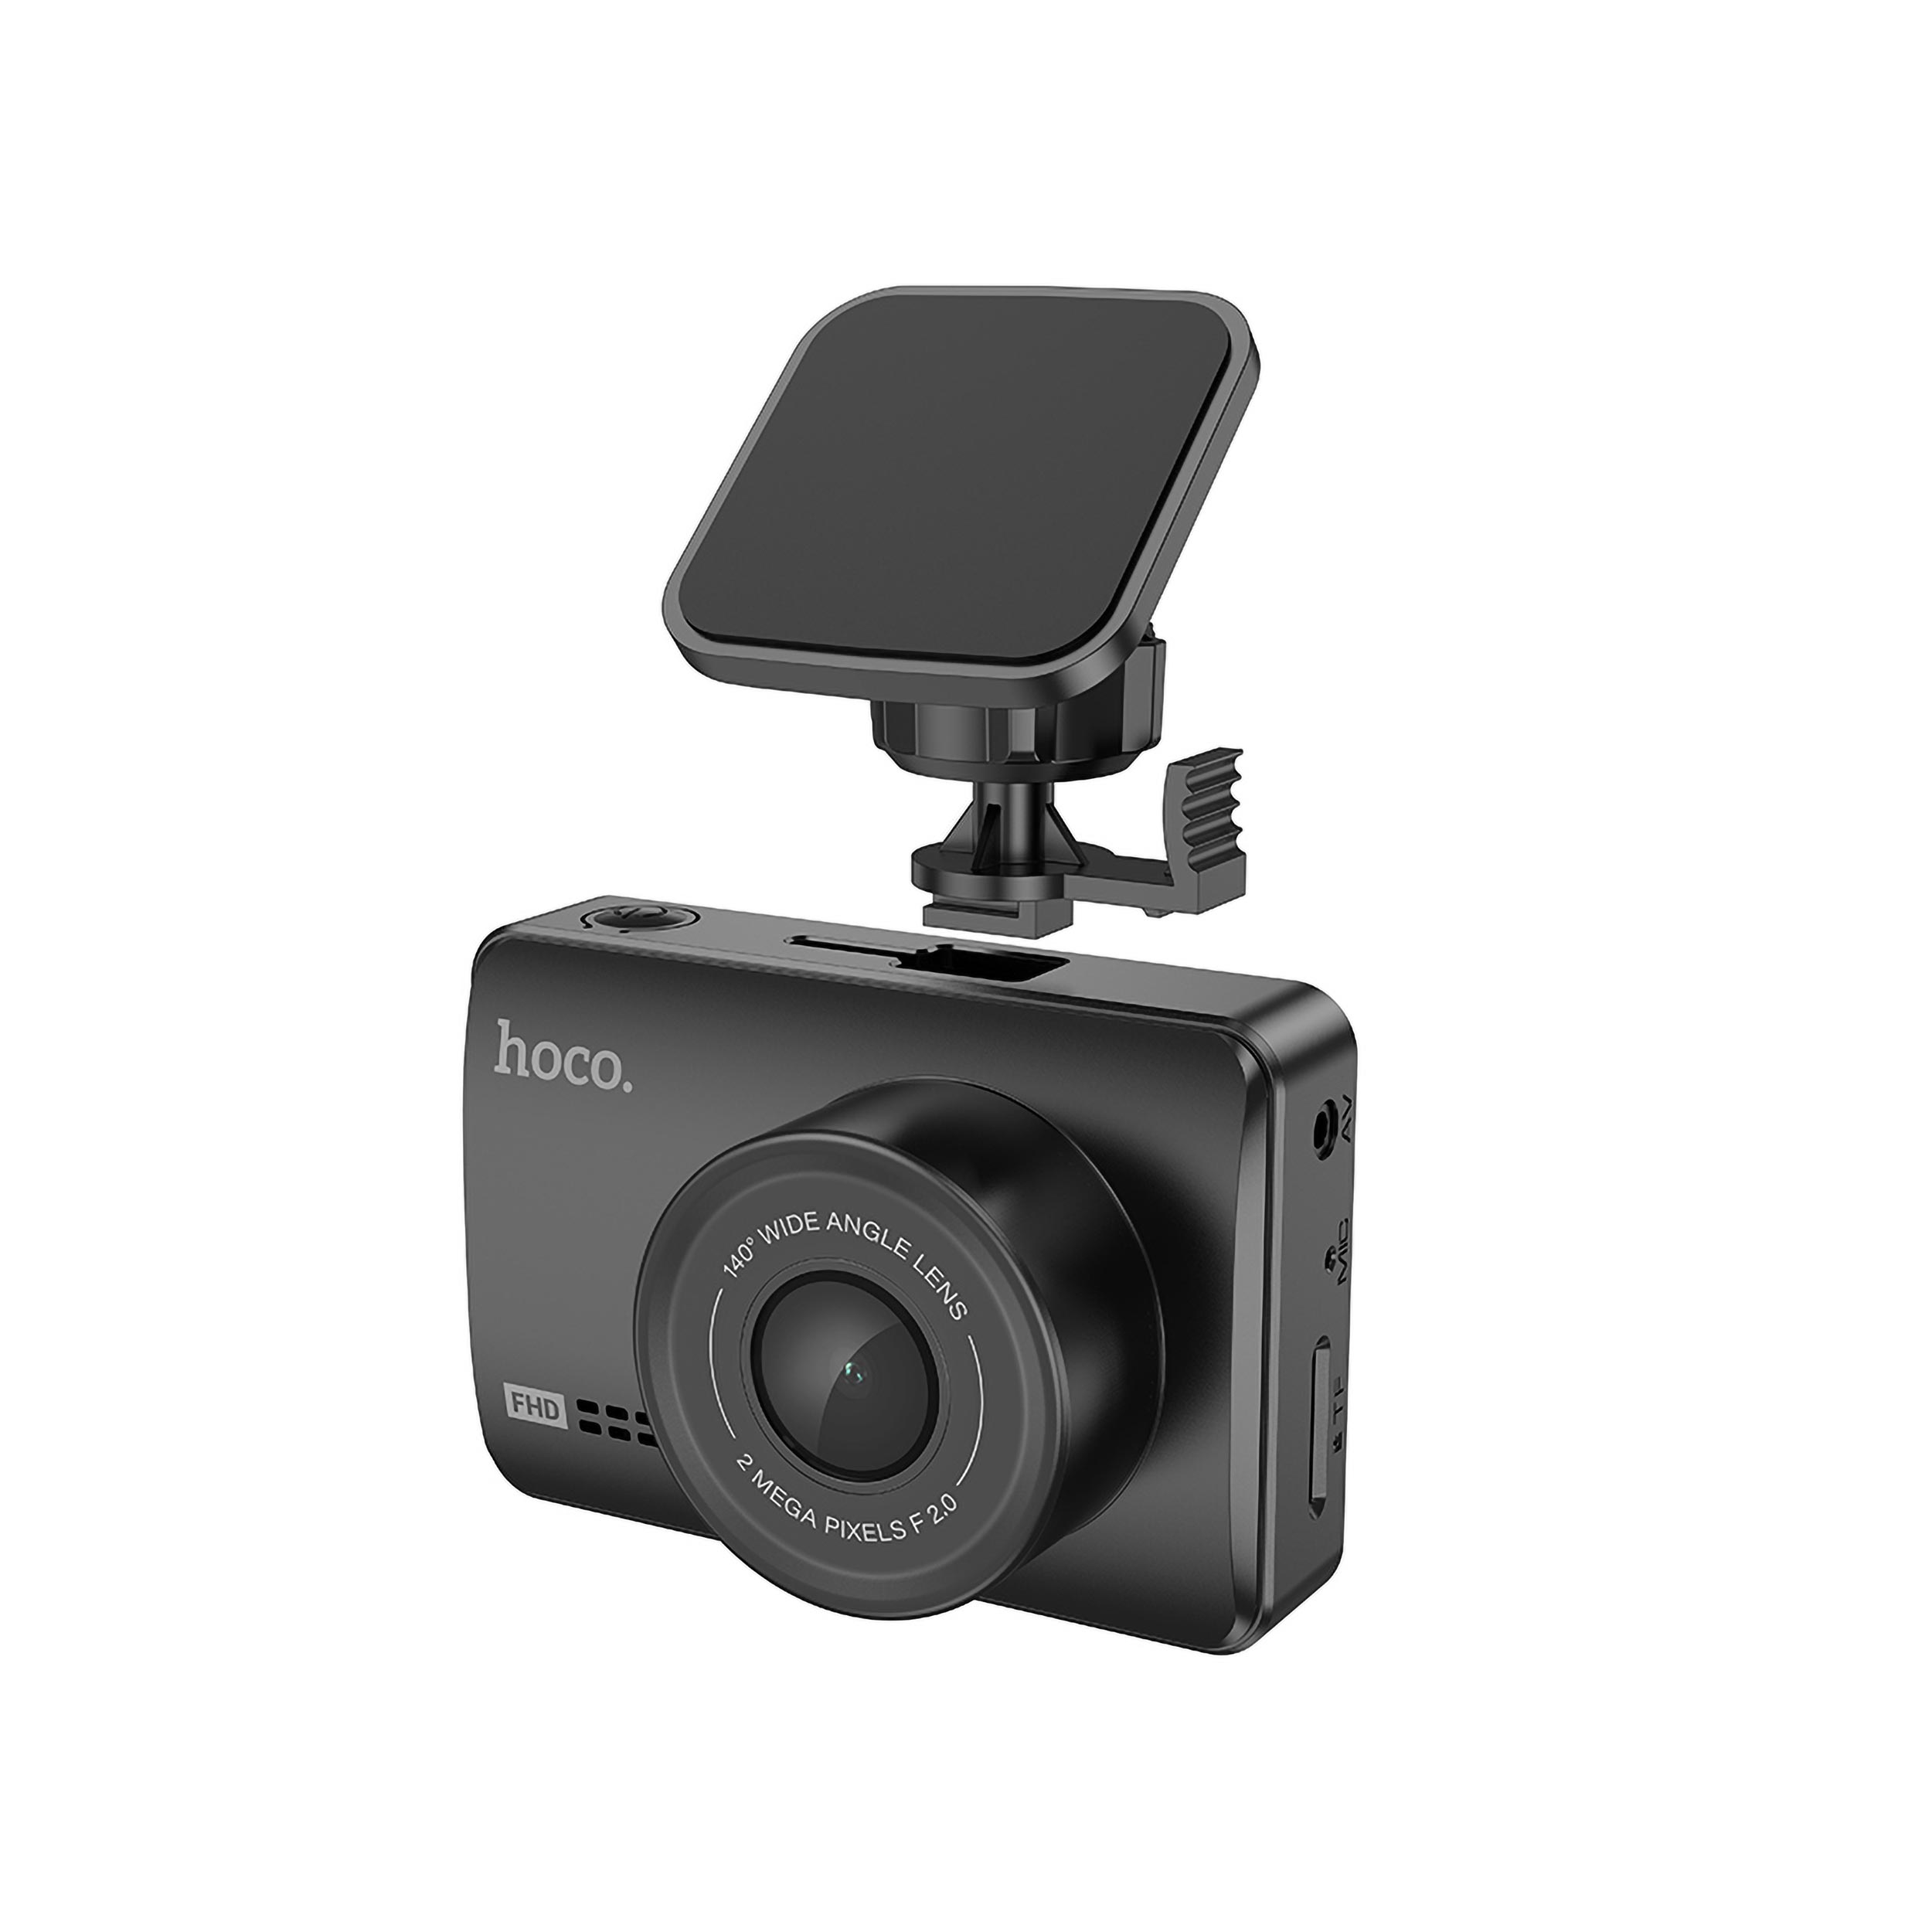 نکته خرید - قیمت روز دوربین فیلم برداری خودرو هوکو مدل DV3 خرید